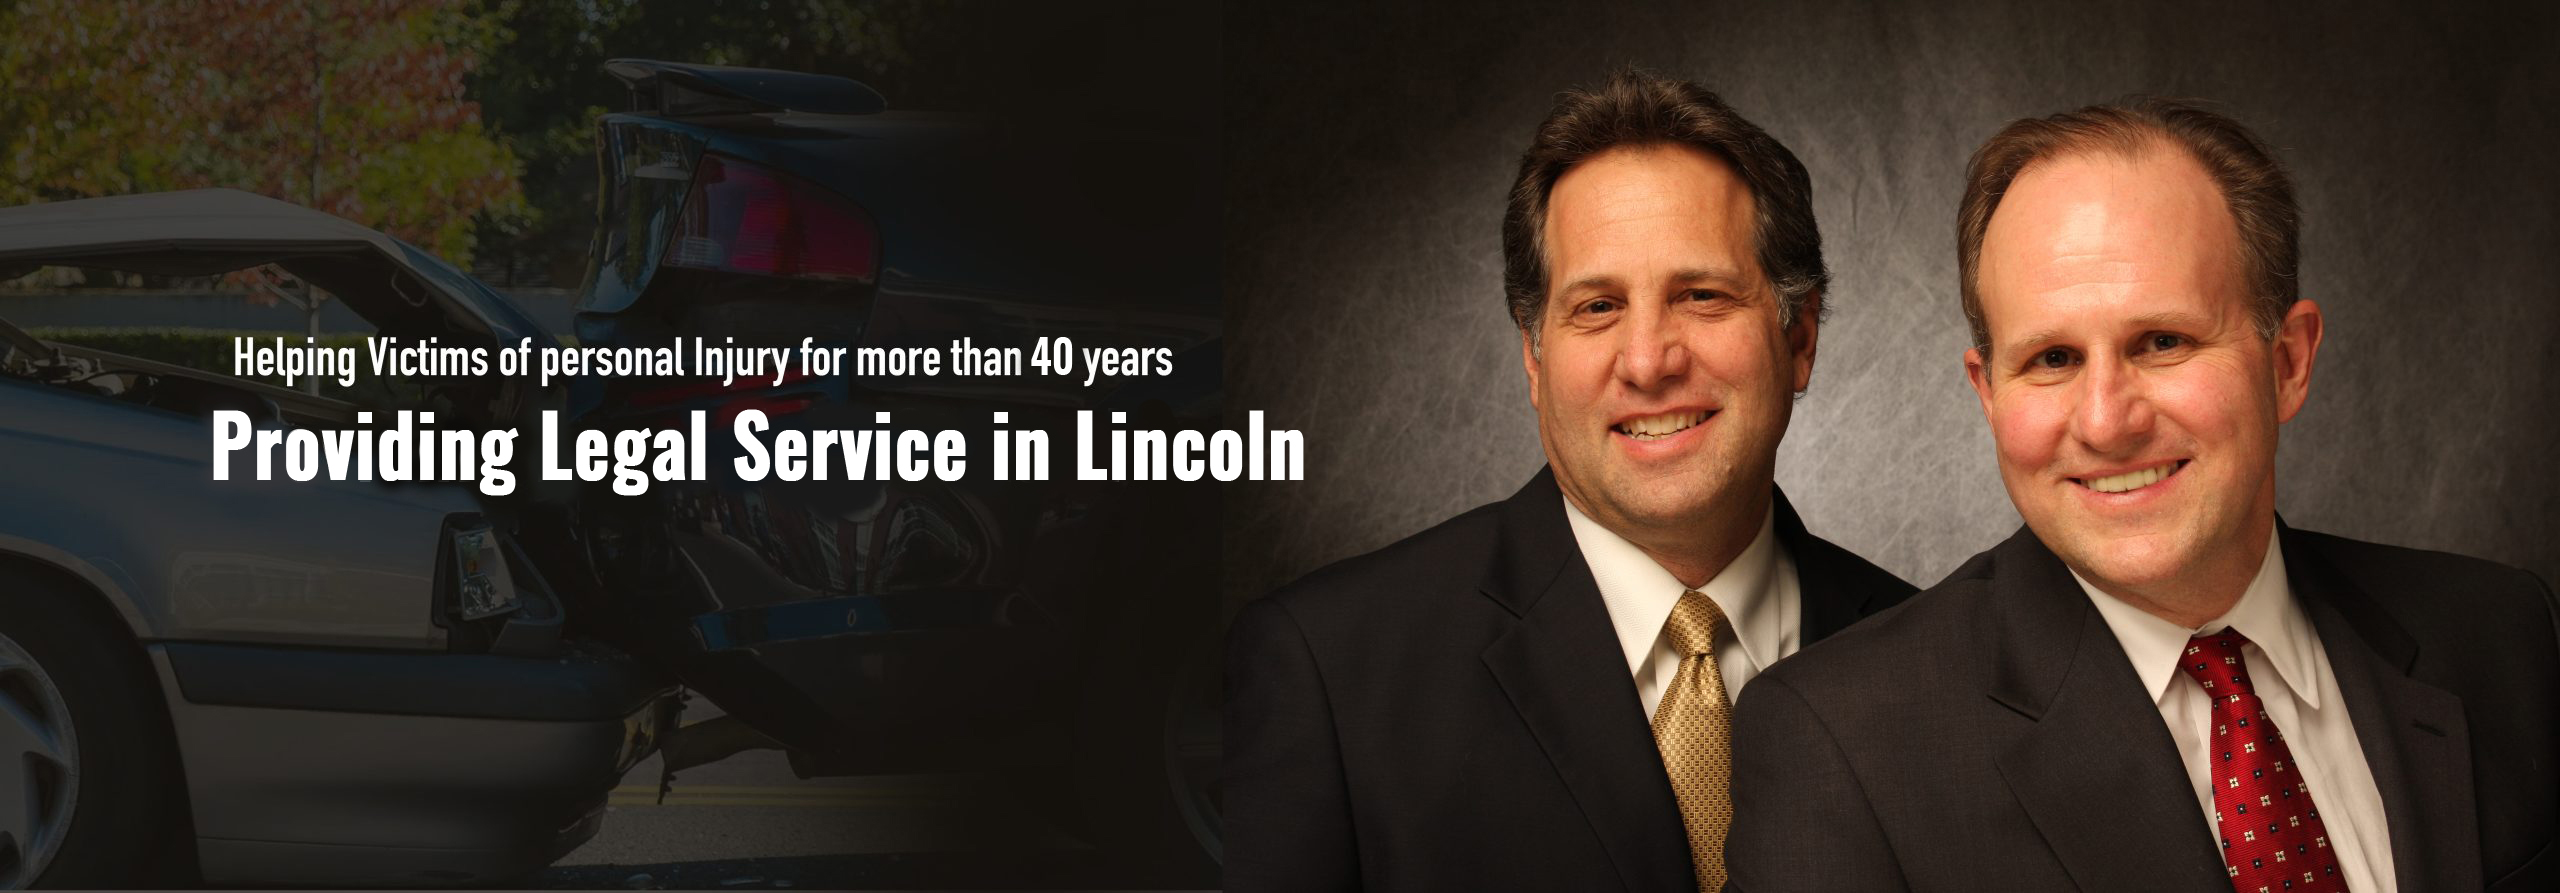 Providing Legal Service in Lincoln